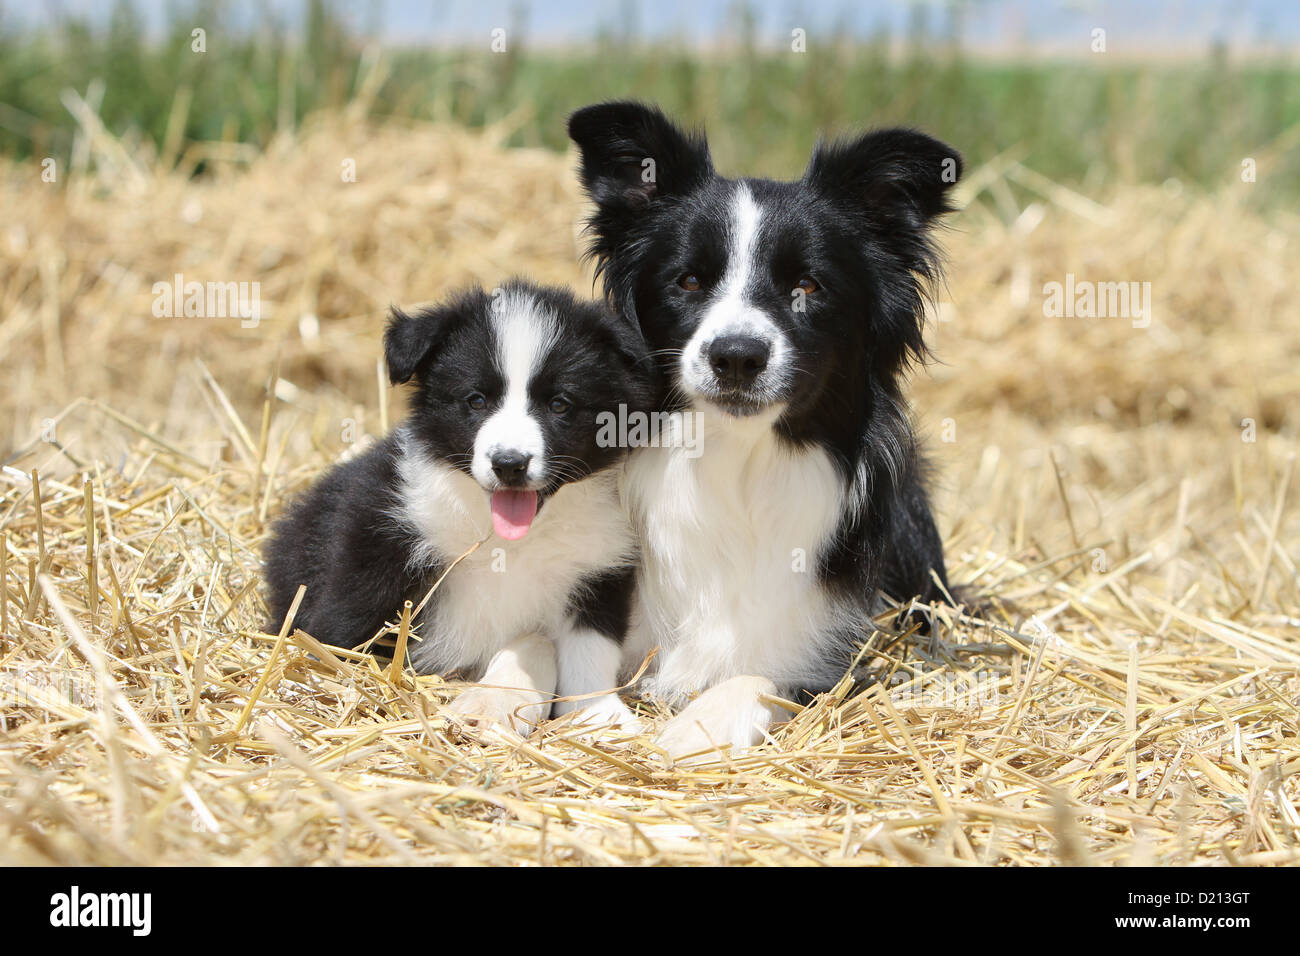 Cane Border Collie adulto e cucciolo bianco e nero che giace nella paglia Foto Stock